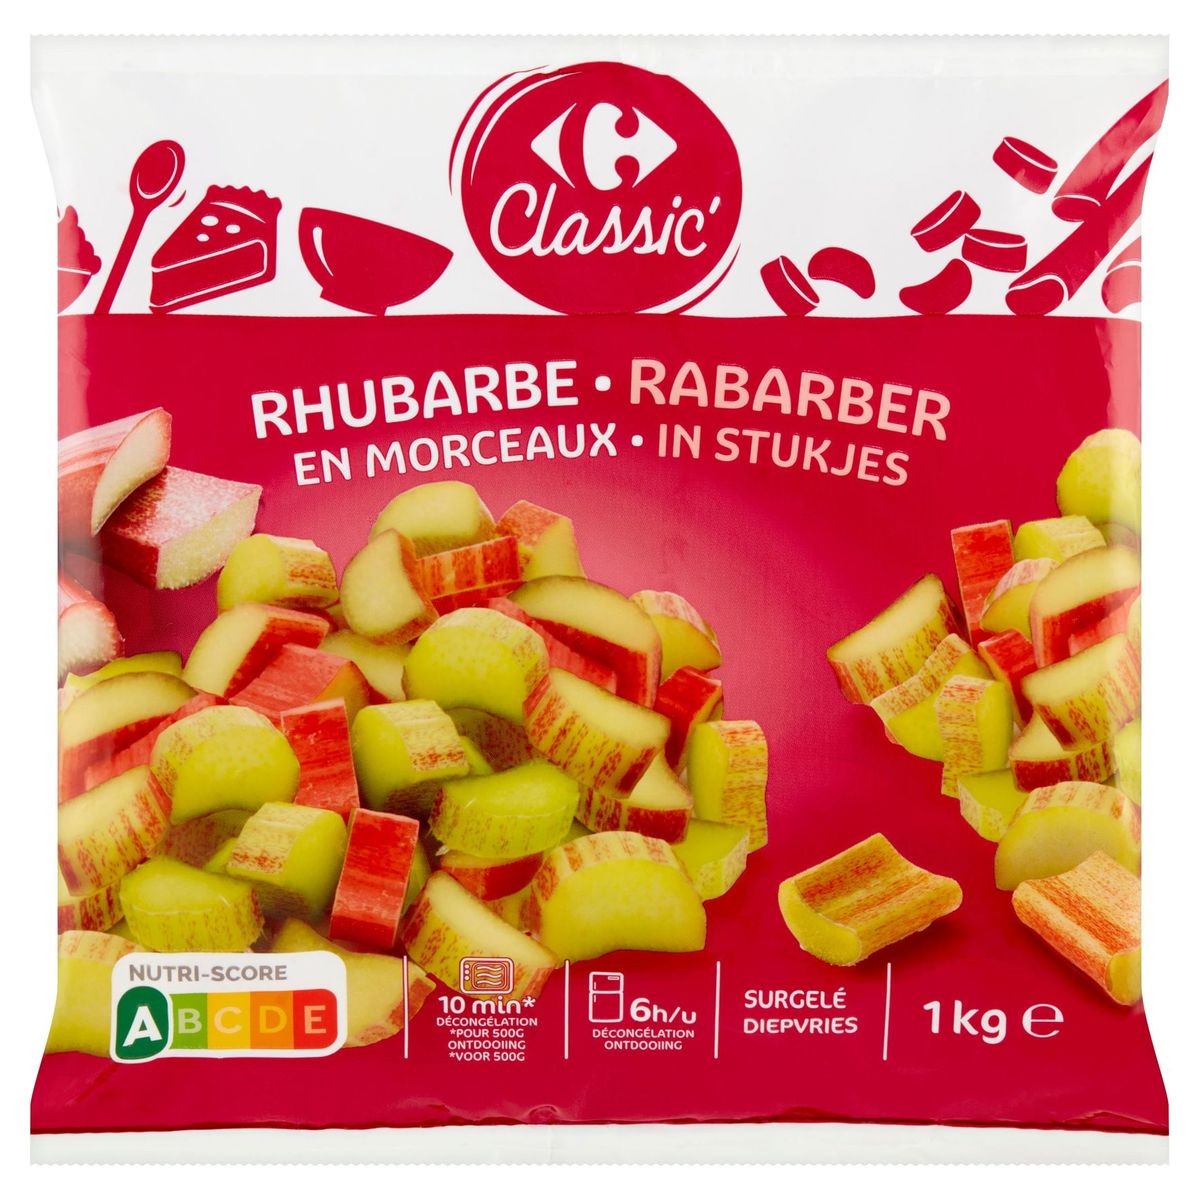 Carrefour Classic' Rhubarbe en Morceaux 1 kg